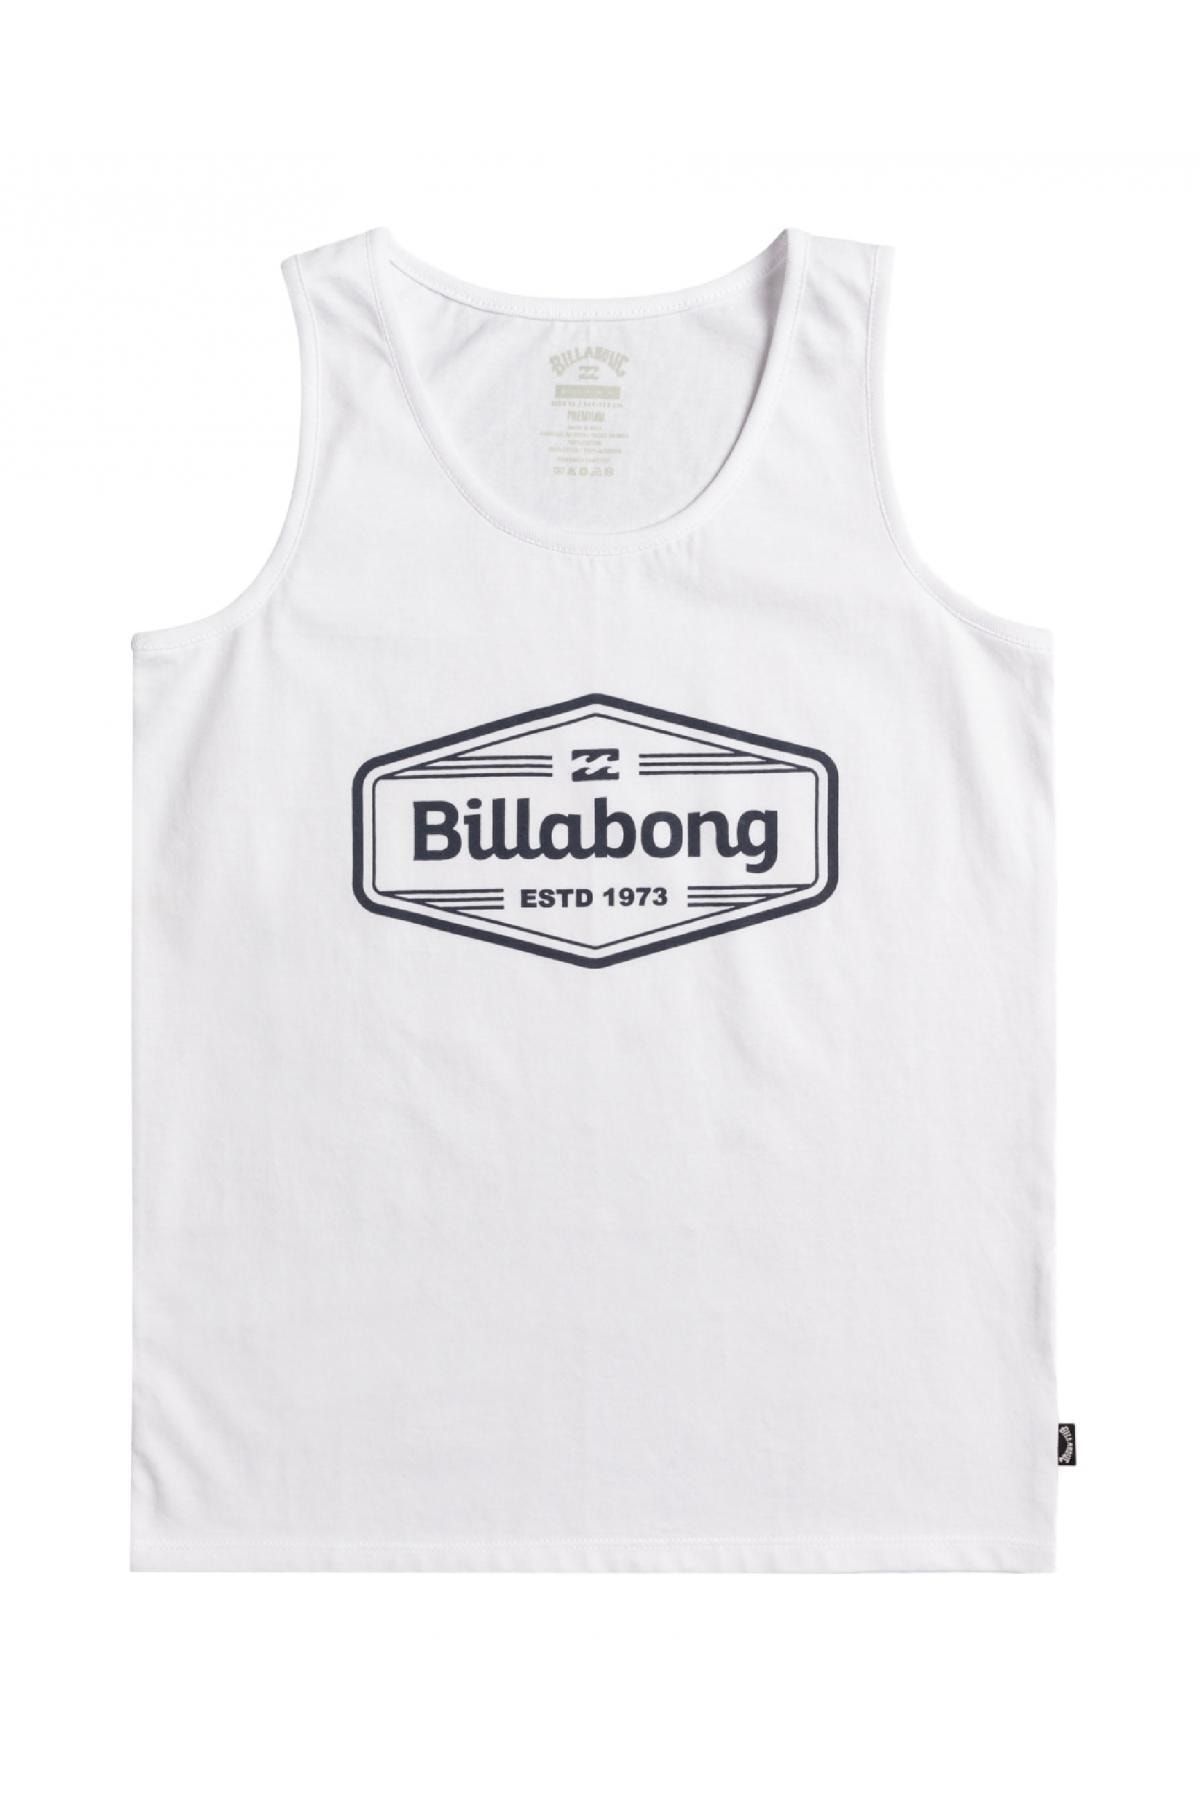 Billabong Ebbzt00111 Trademark Tk Tank Top Beyaz Çocuk Atlet